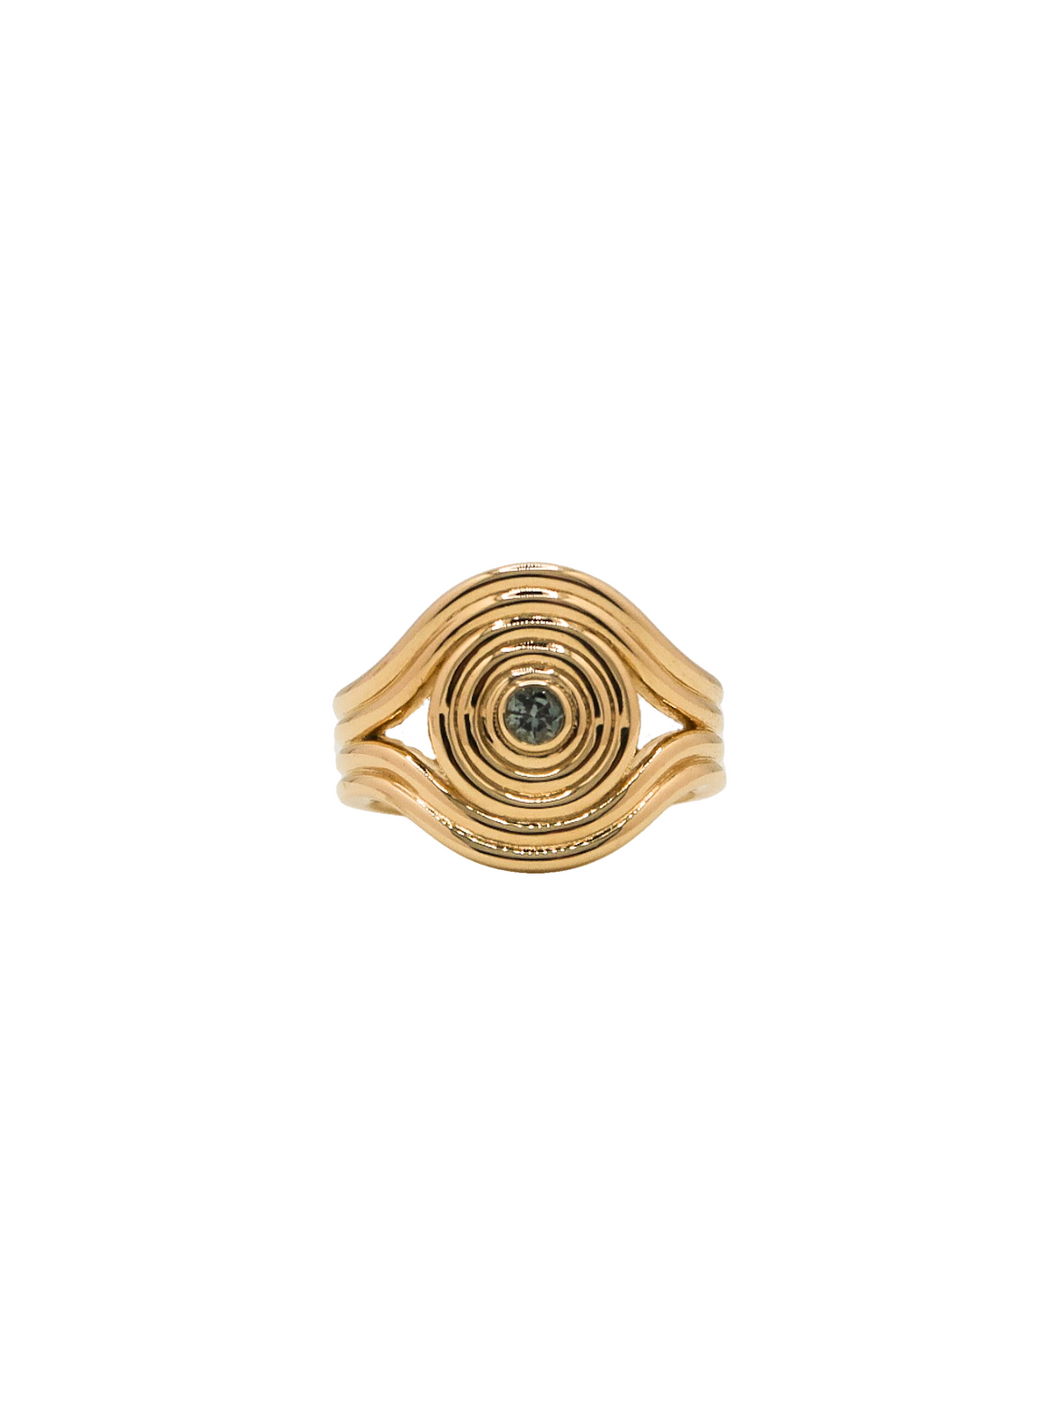 Eye of Athena Signet Ring